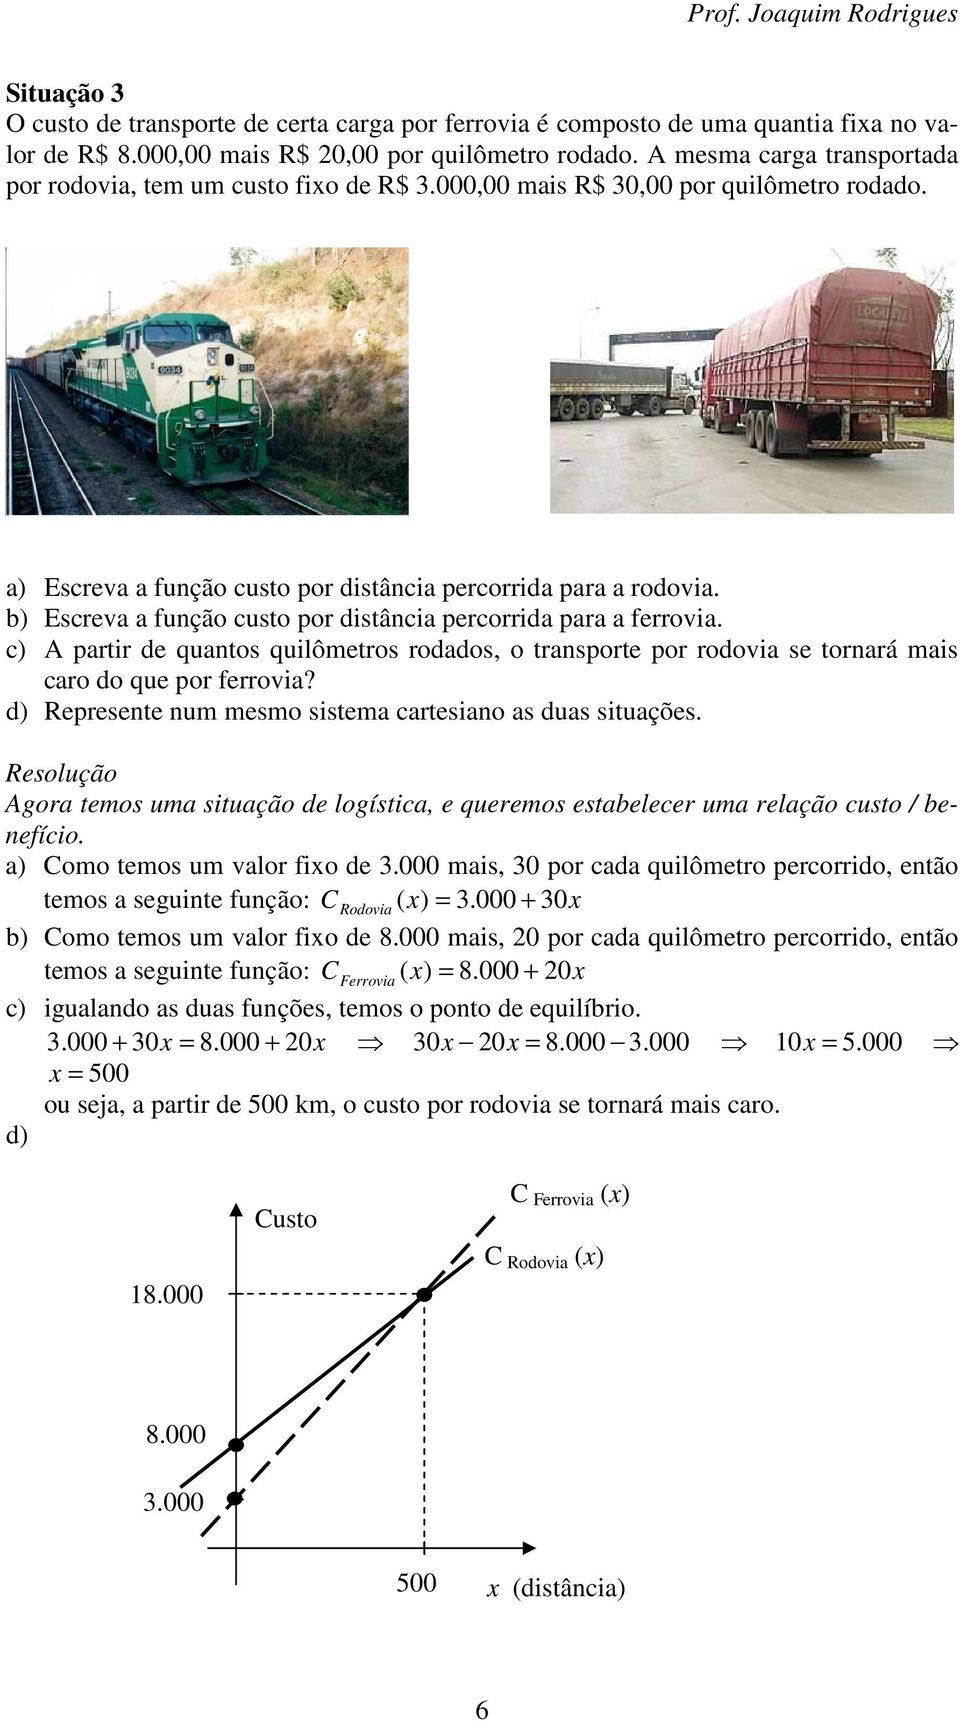 b) Escreva a função custo por distância percorrida para a ferrovia. c) A partir de quantos quilômetros rodados, o transporte por rodovia se tornará mais caro do que por ferrovia?